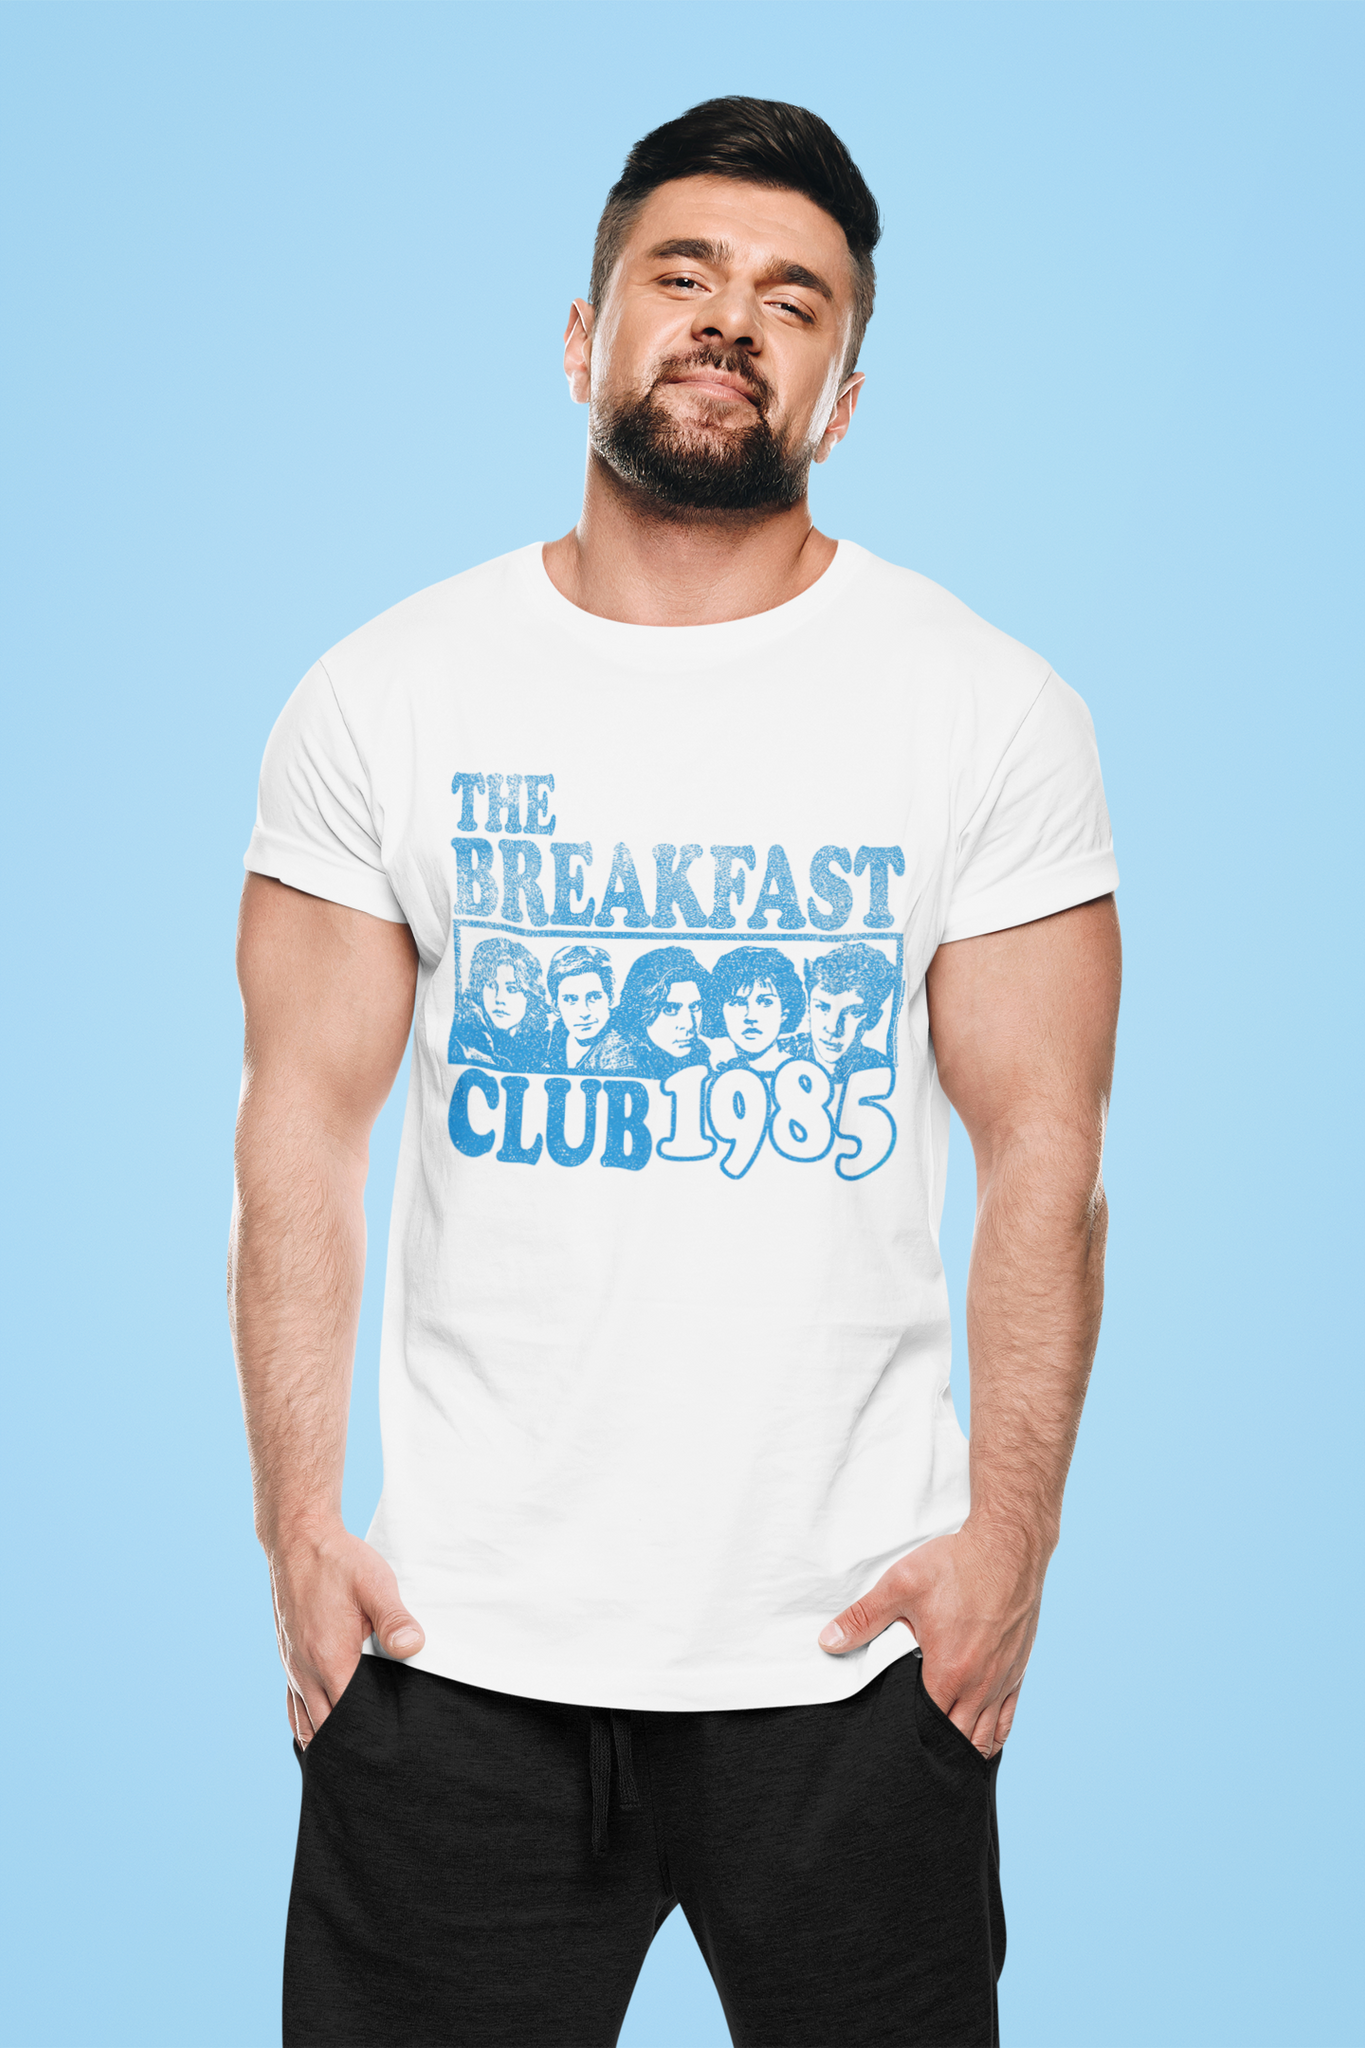 Breakfast Club T Shirt, The Breakfast Club 1985 Character T Shirt